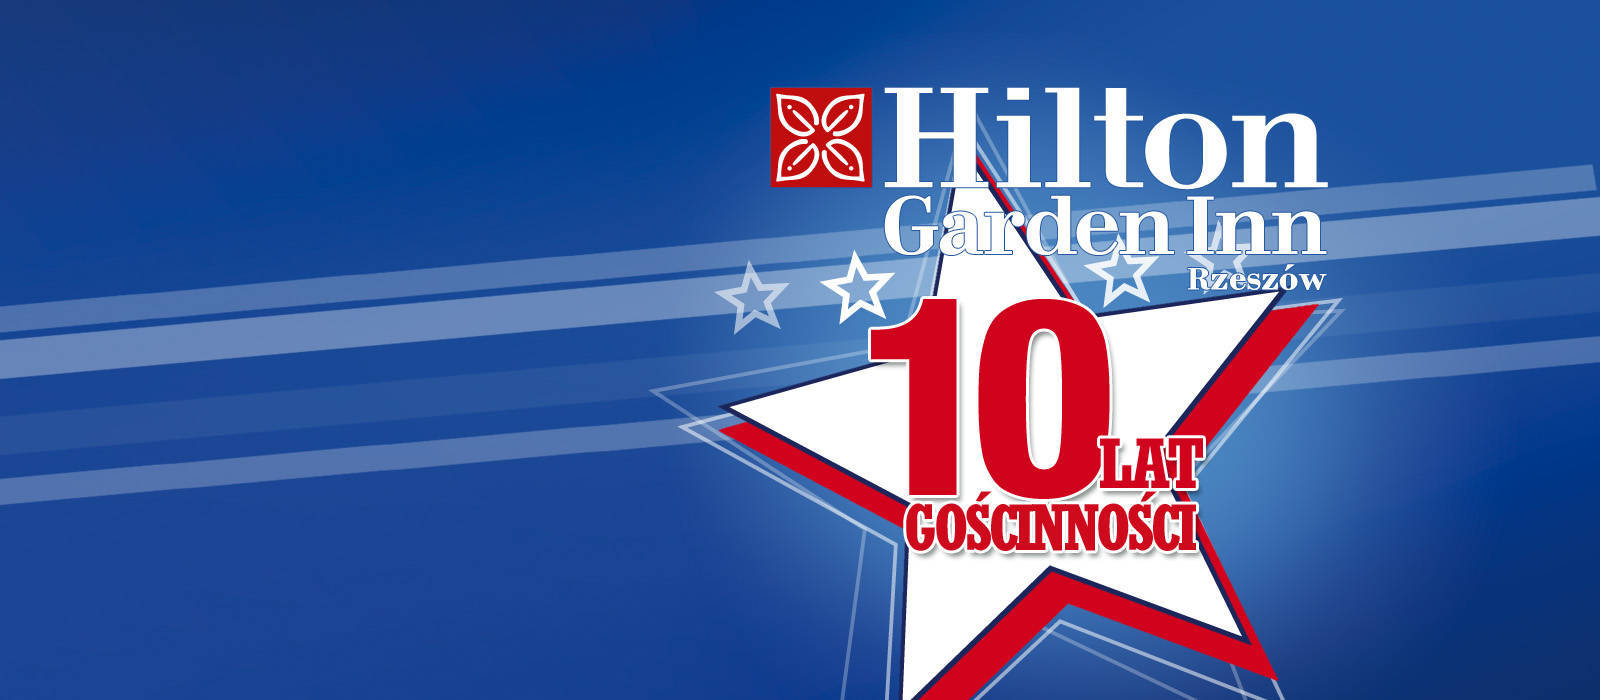 10 URODZINY Hilton Garden Inn Rzeszów 